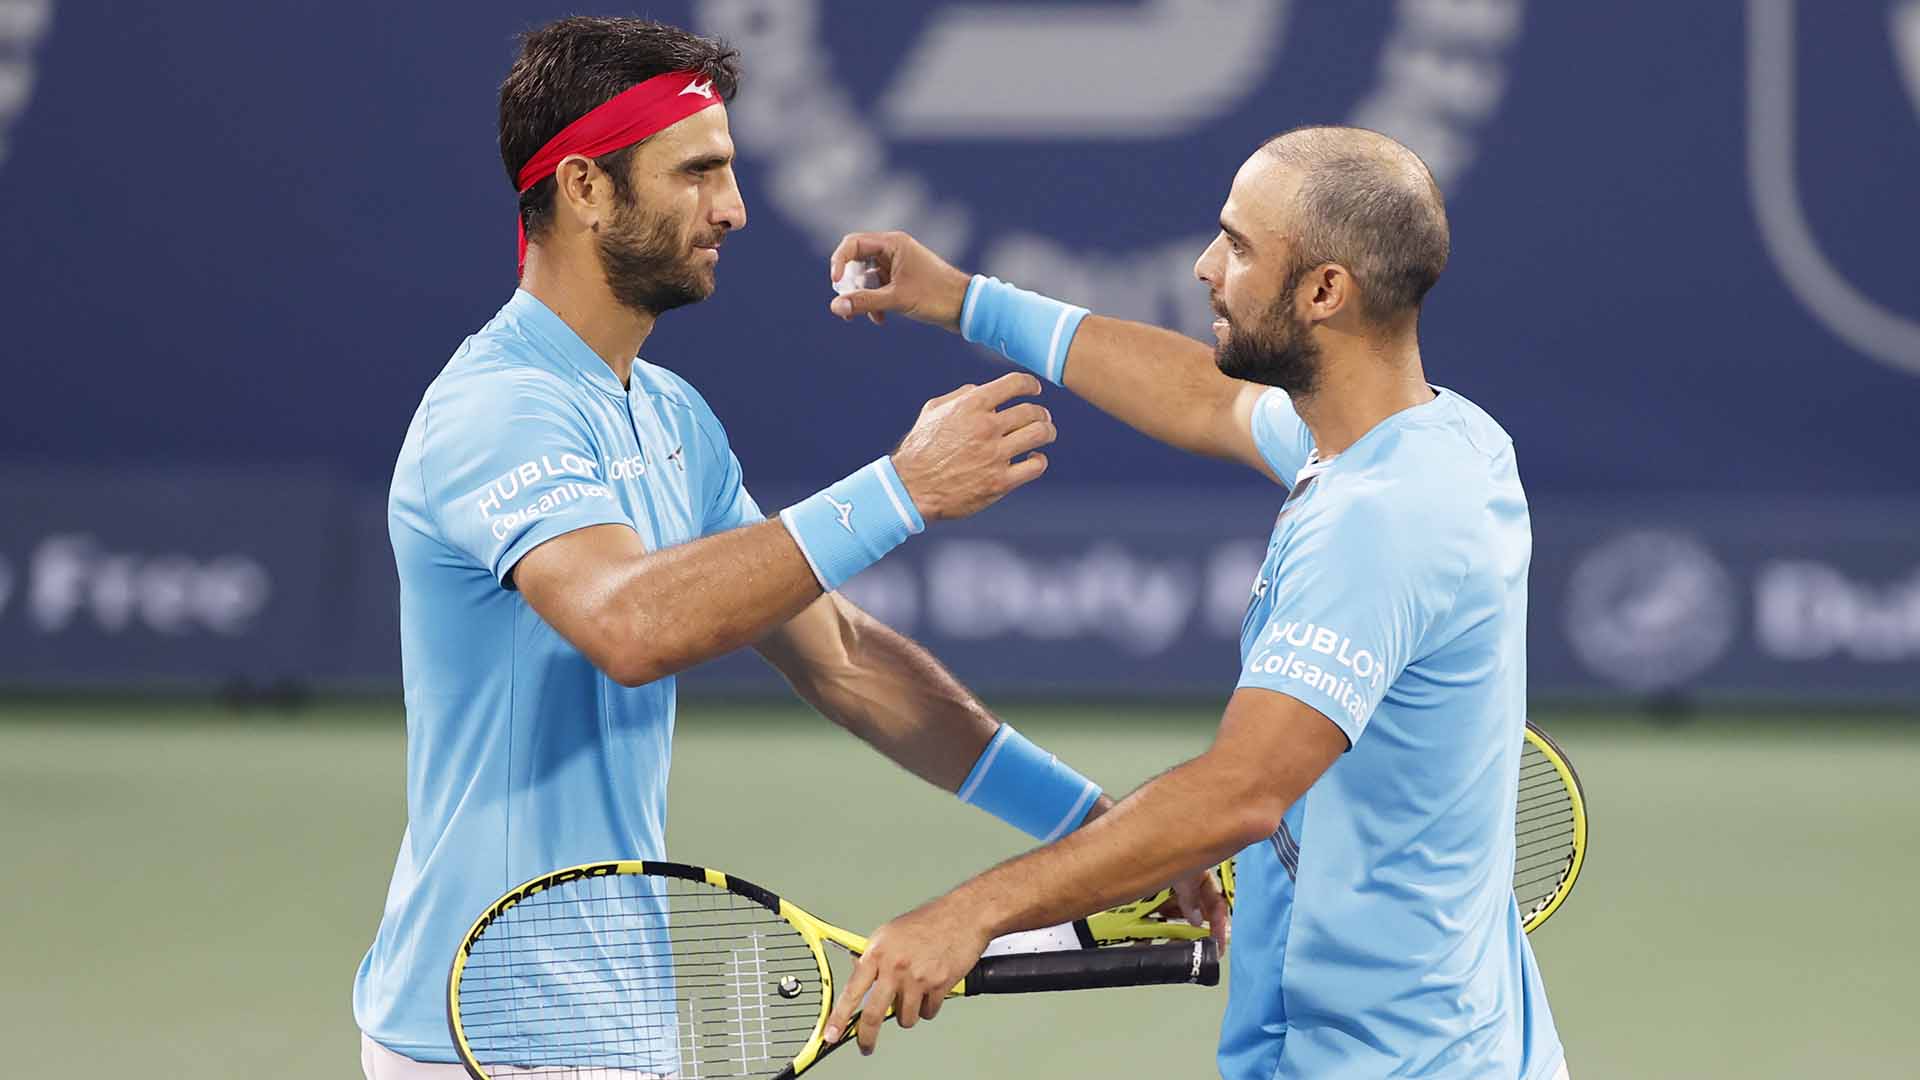 Juan Sebastian Cabal and Robert Farah Capture Dubai Trophy ATP Tour Tennis